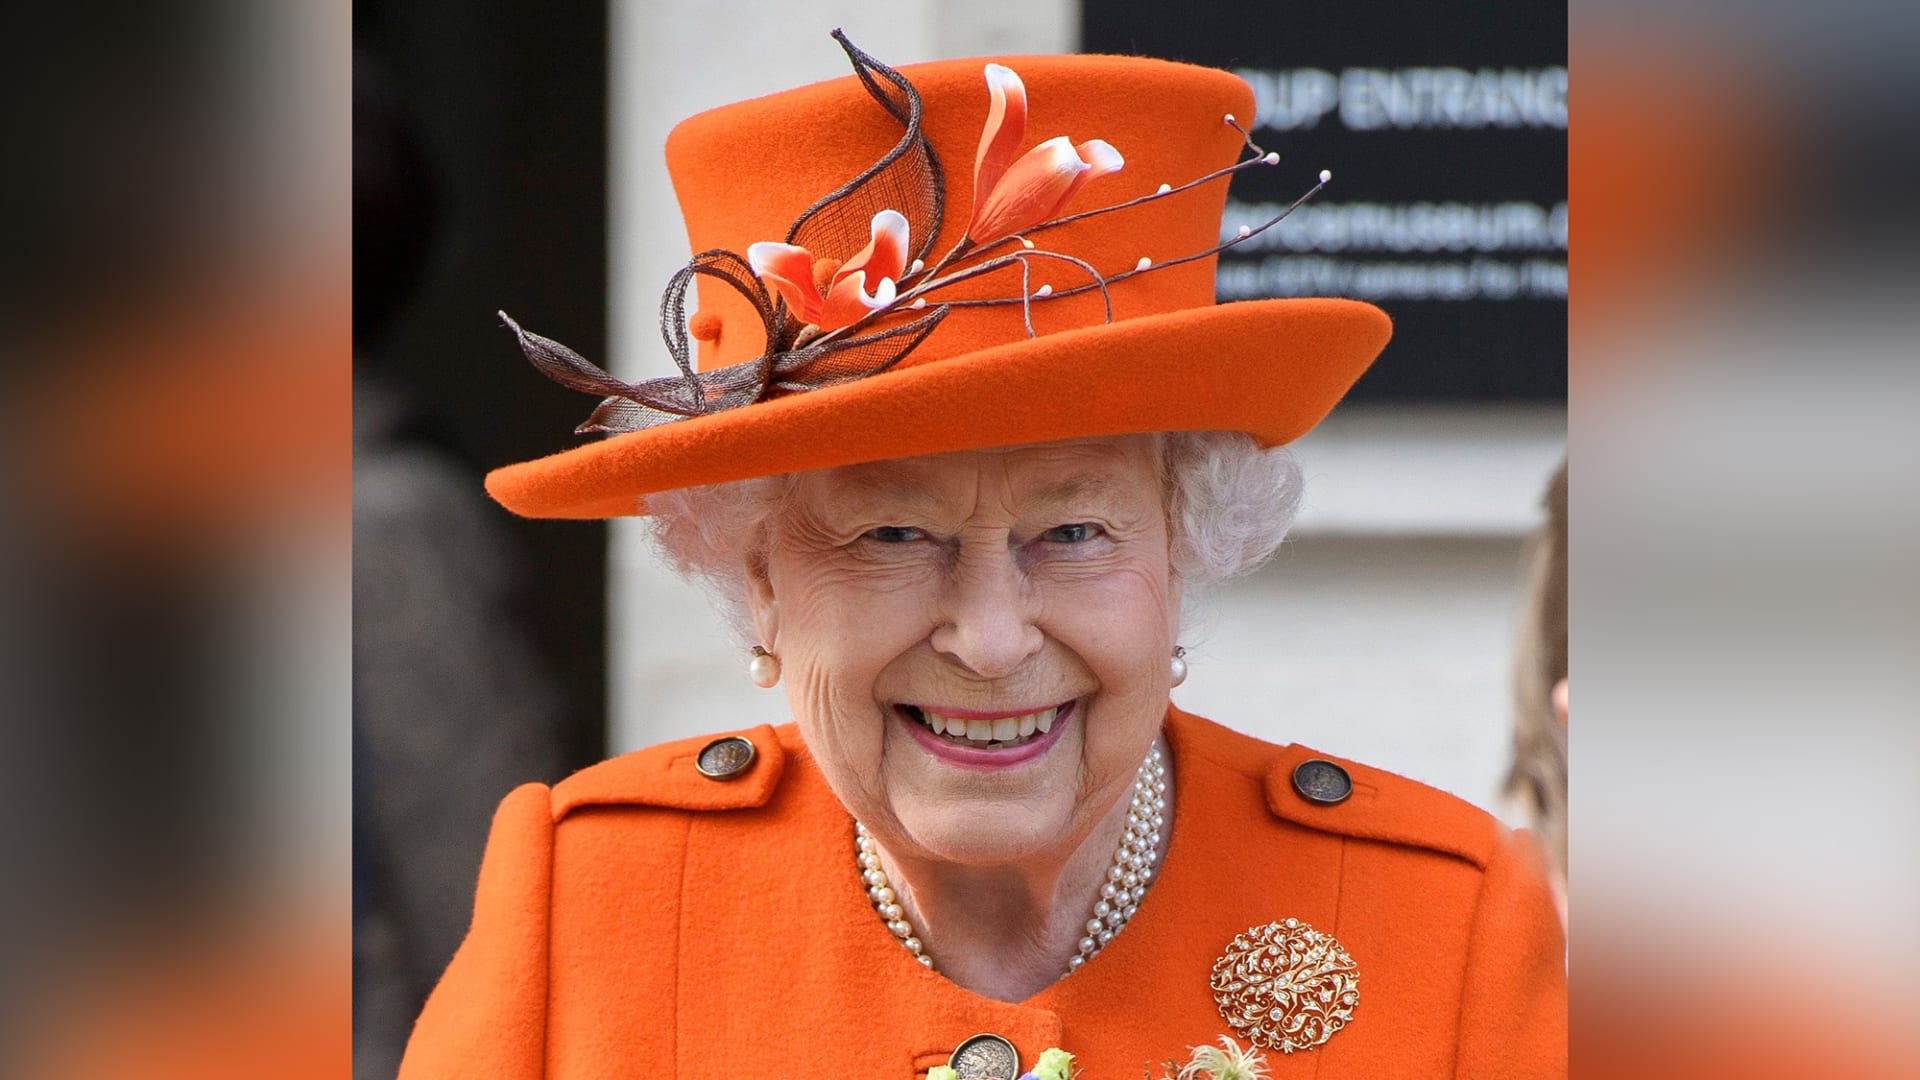 المصور الملكي تيم روك لـCNN : الملكة إليزابيث تحب الضحك وتعشق الخيول  